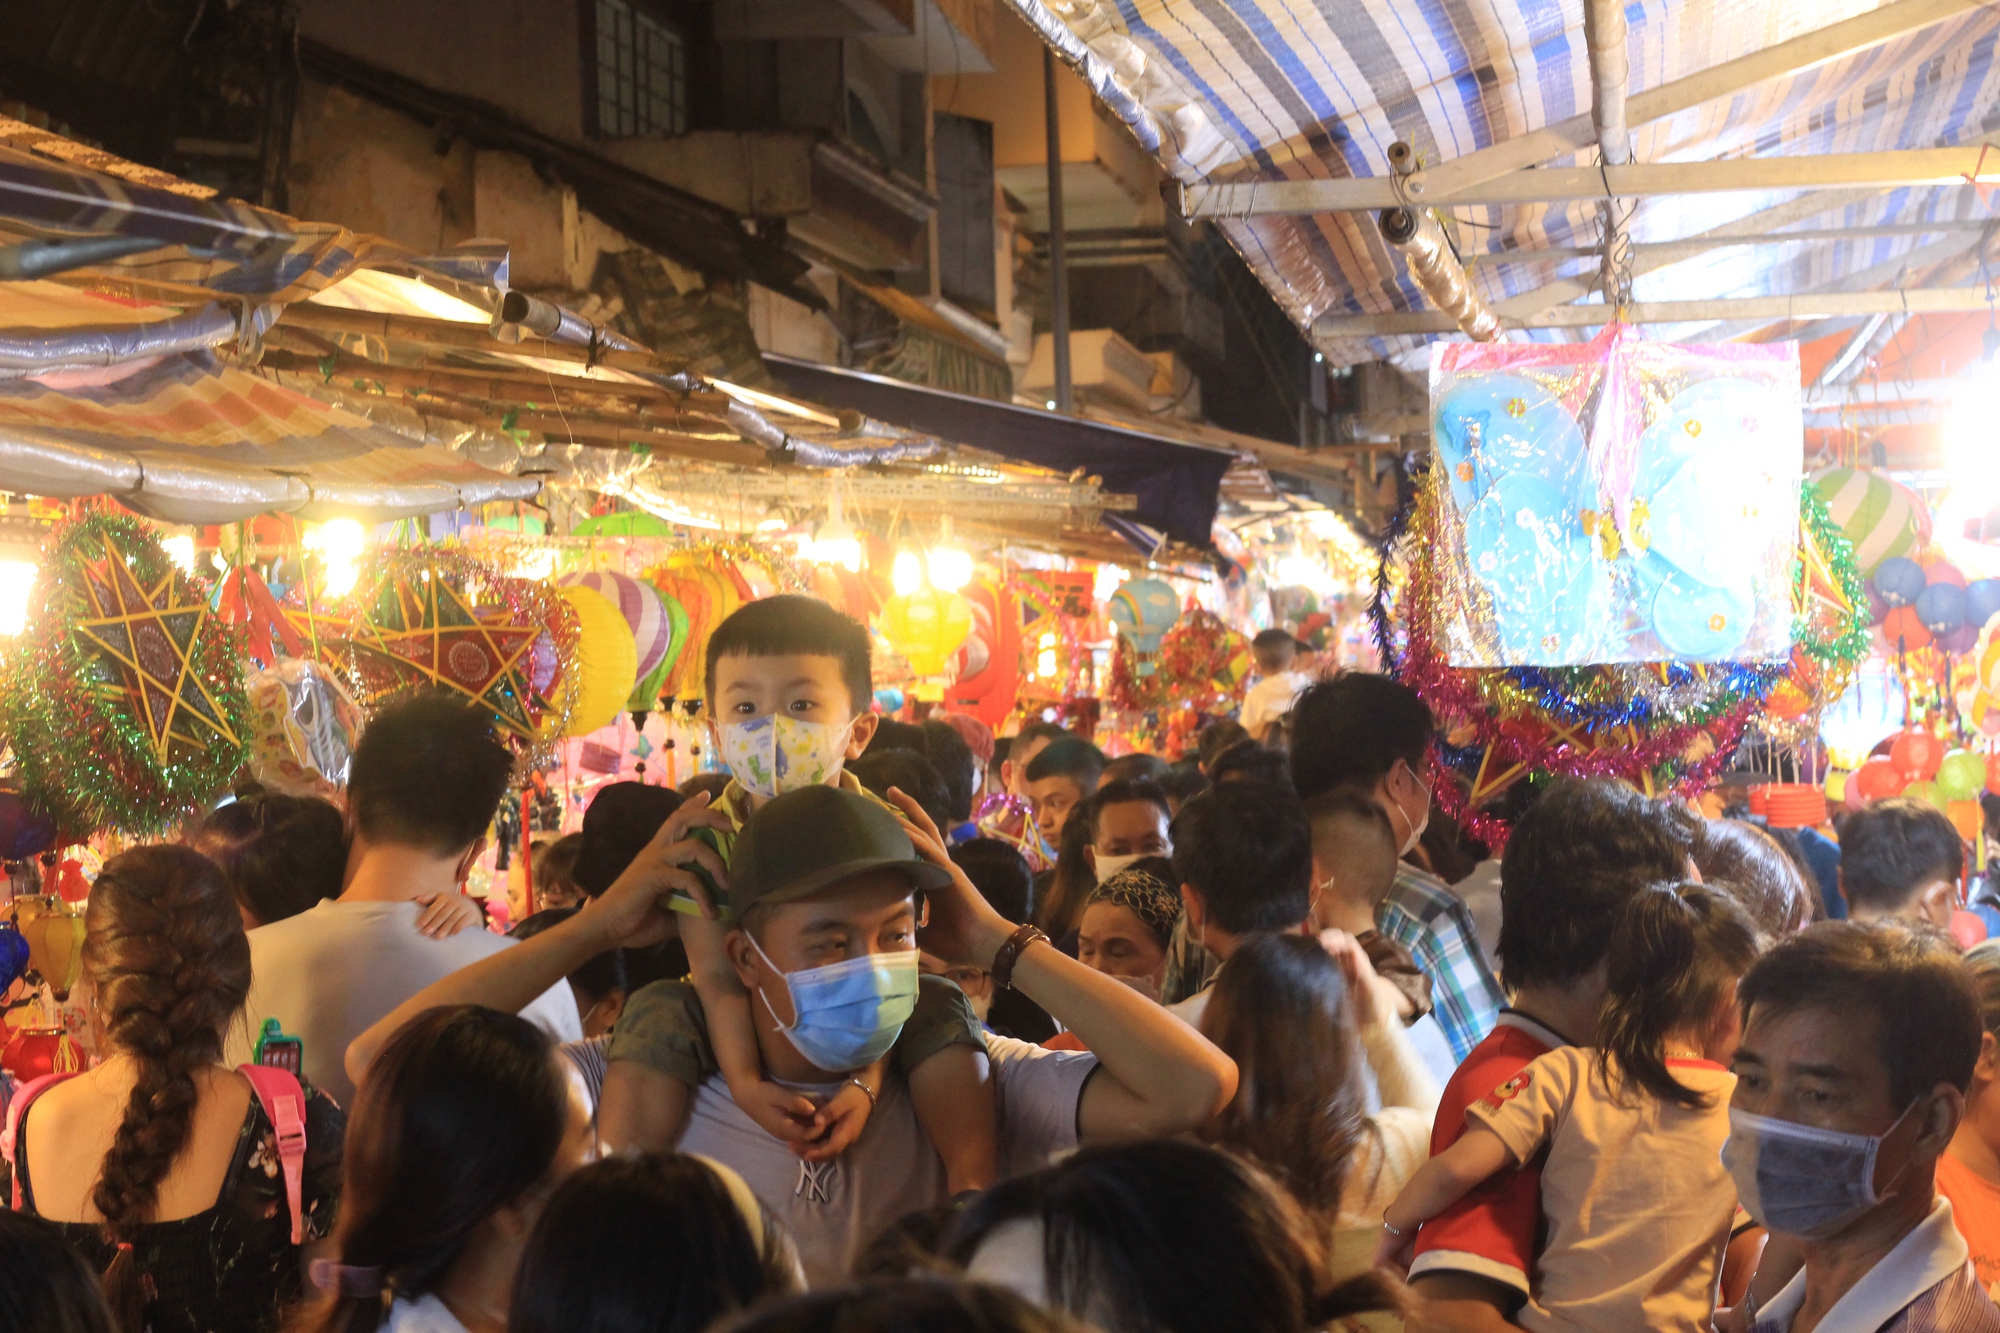 Lồng đèn - Hình ảnh những chiếc lồng đèn đa dạng về màu sắc, hình dáng và hoa văn sẽ khiến bạn nhẹ nhàng vào cảm xúc thân thuộc, lãng mạn của một Việt Nam đong đầy nét văn hóa truyền thống.